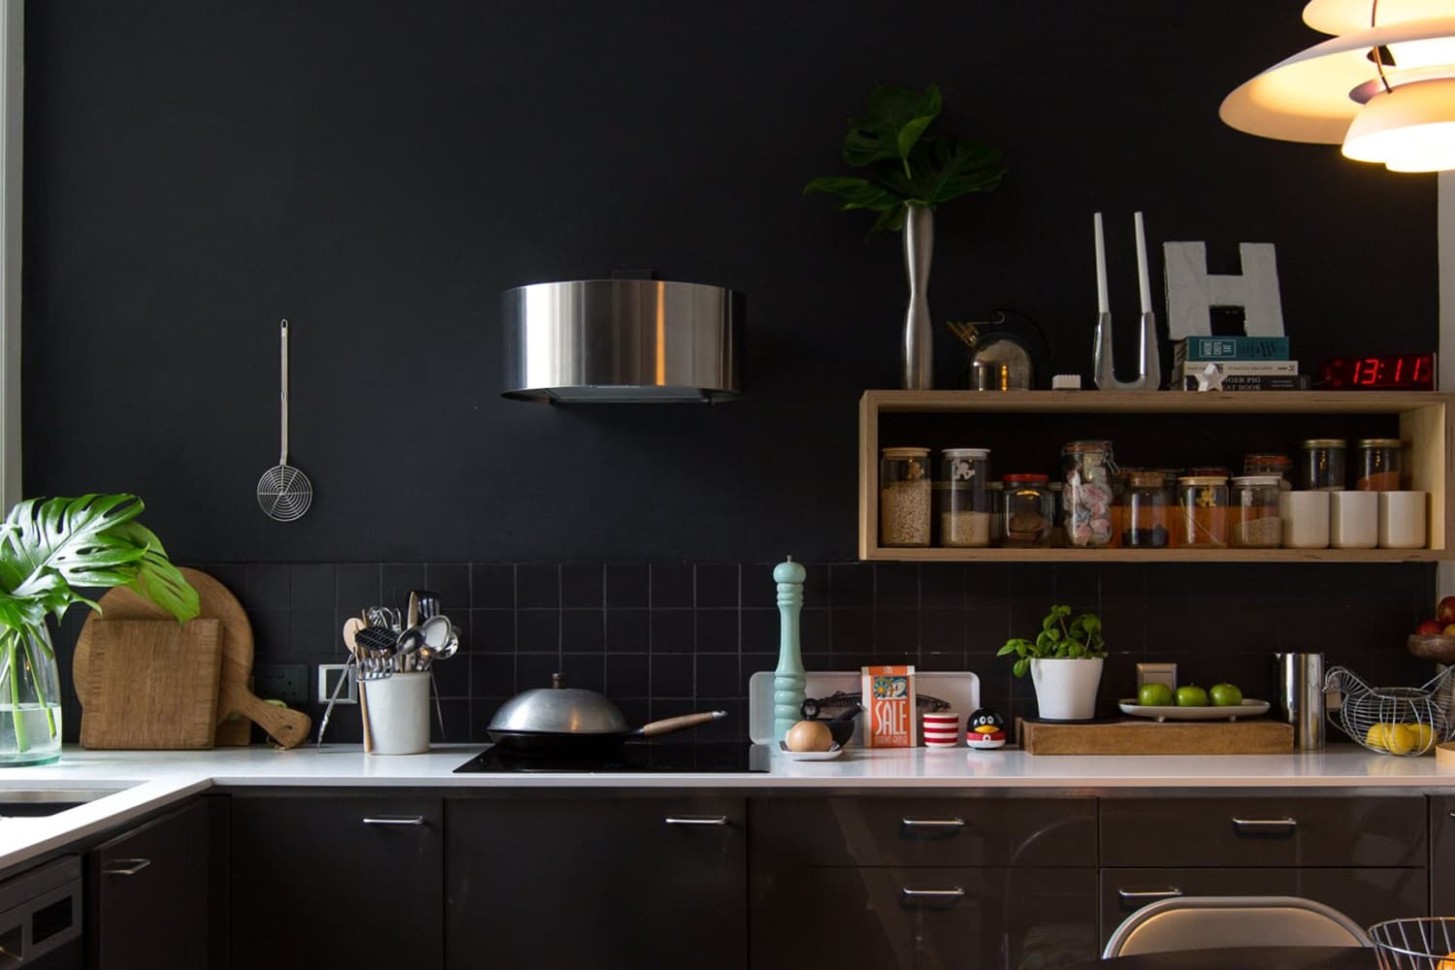 Easy Ways to Brighten Up a Dark Kitchen  Kitchn - how do you decorate a dark kitchen?